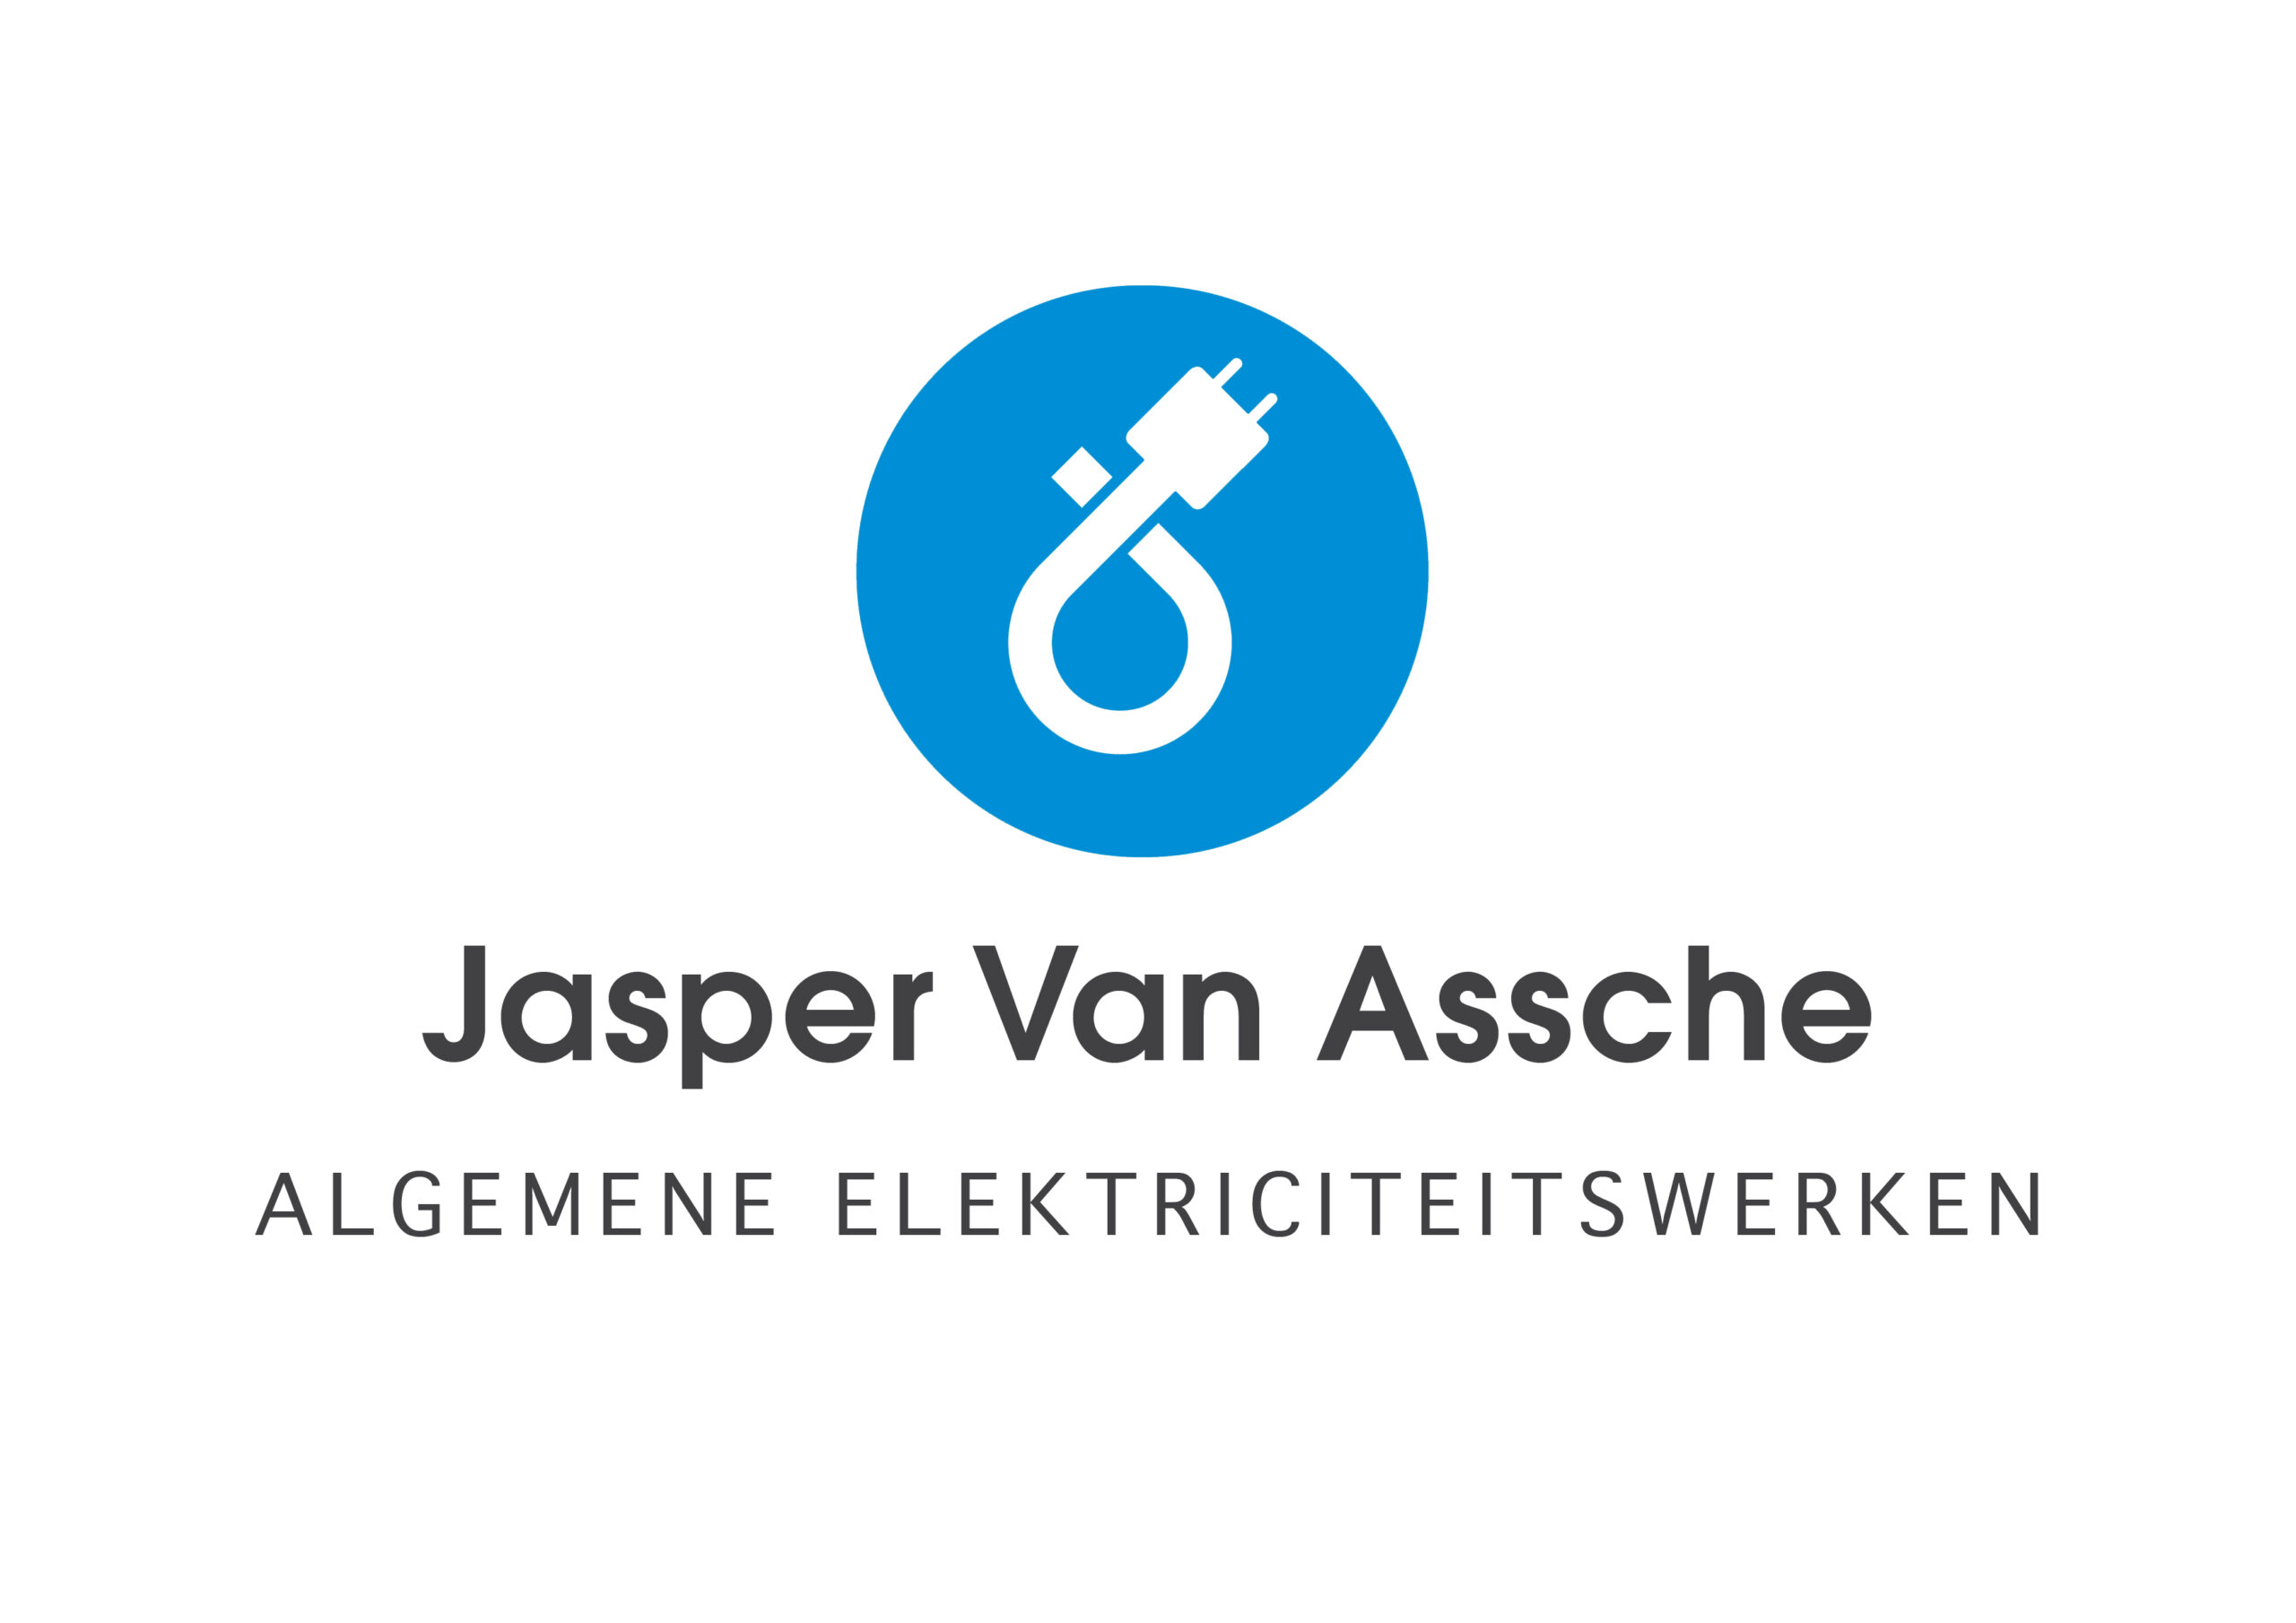 Jasper Van Assche